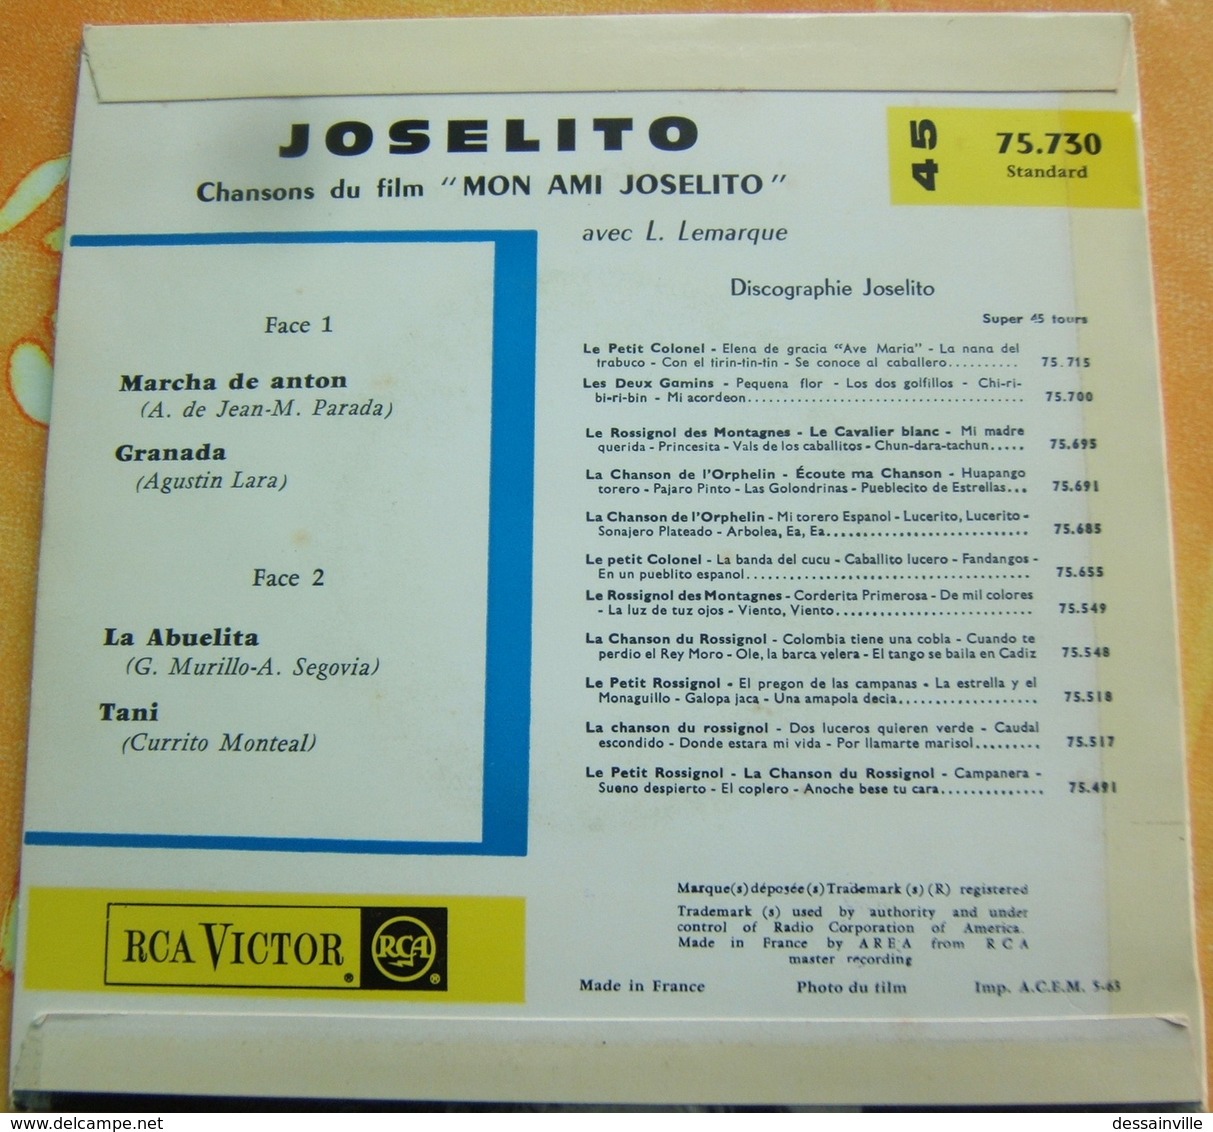 45 Tours - JOSELITO Chansons Du Film (Canciones De La Pelicula) MON AMI JOSELITO - RCA 75.730 - Other - Spanish Music